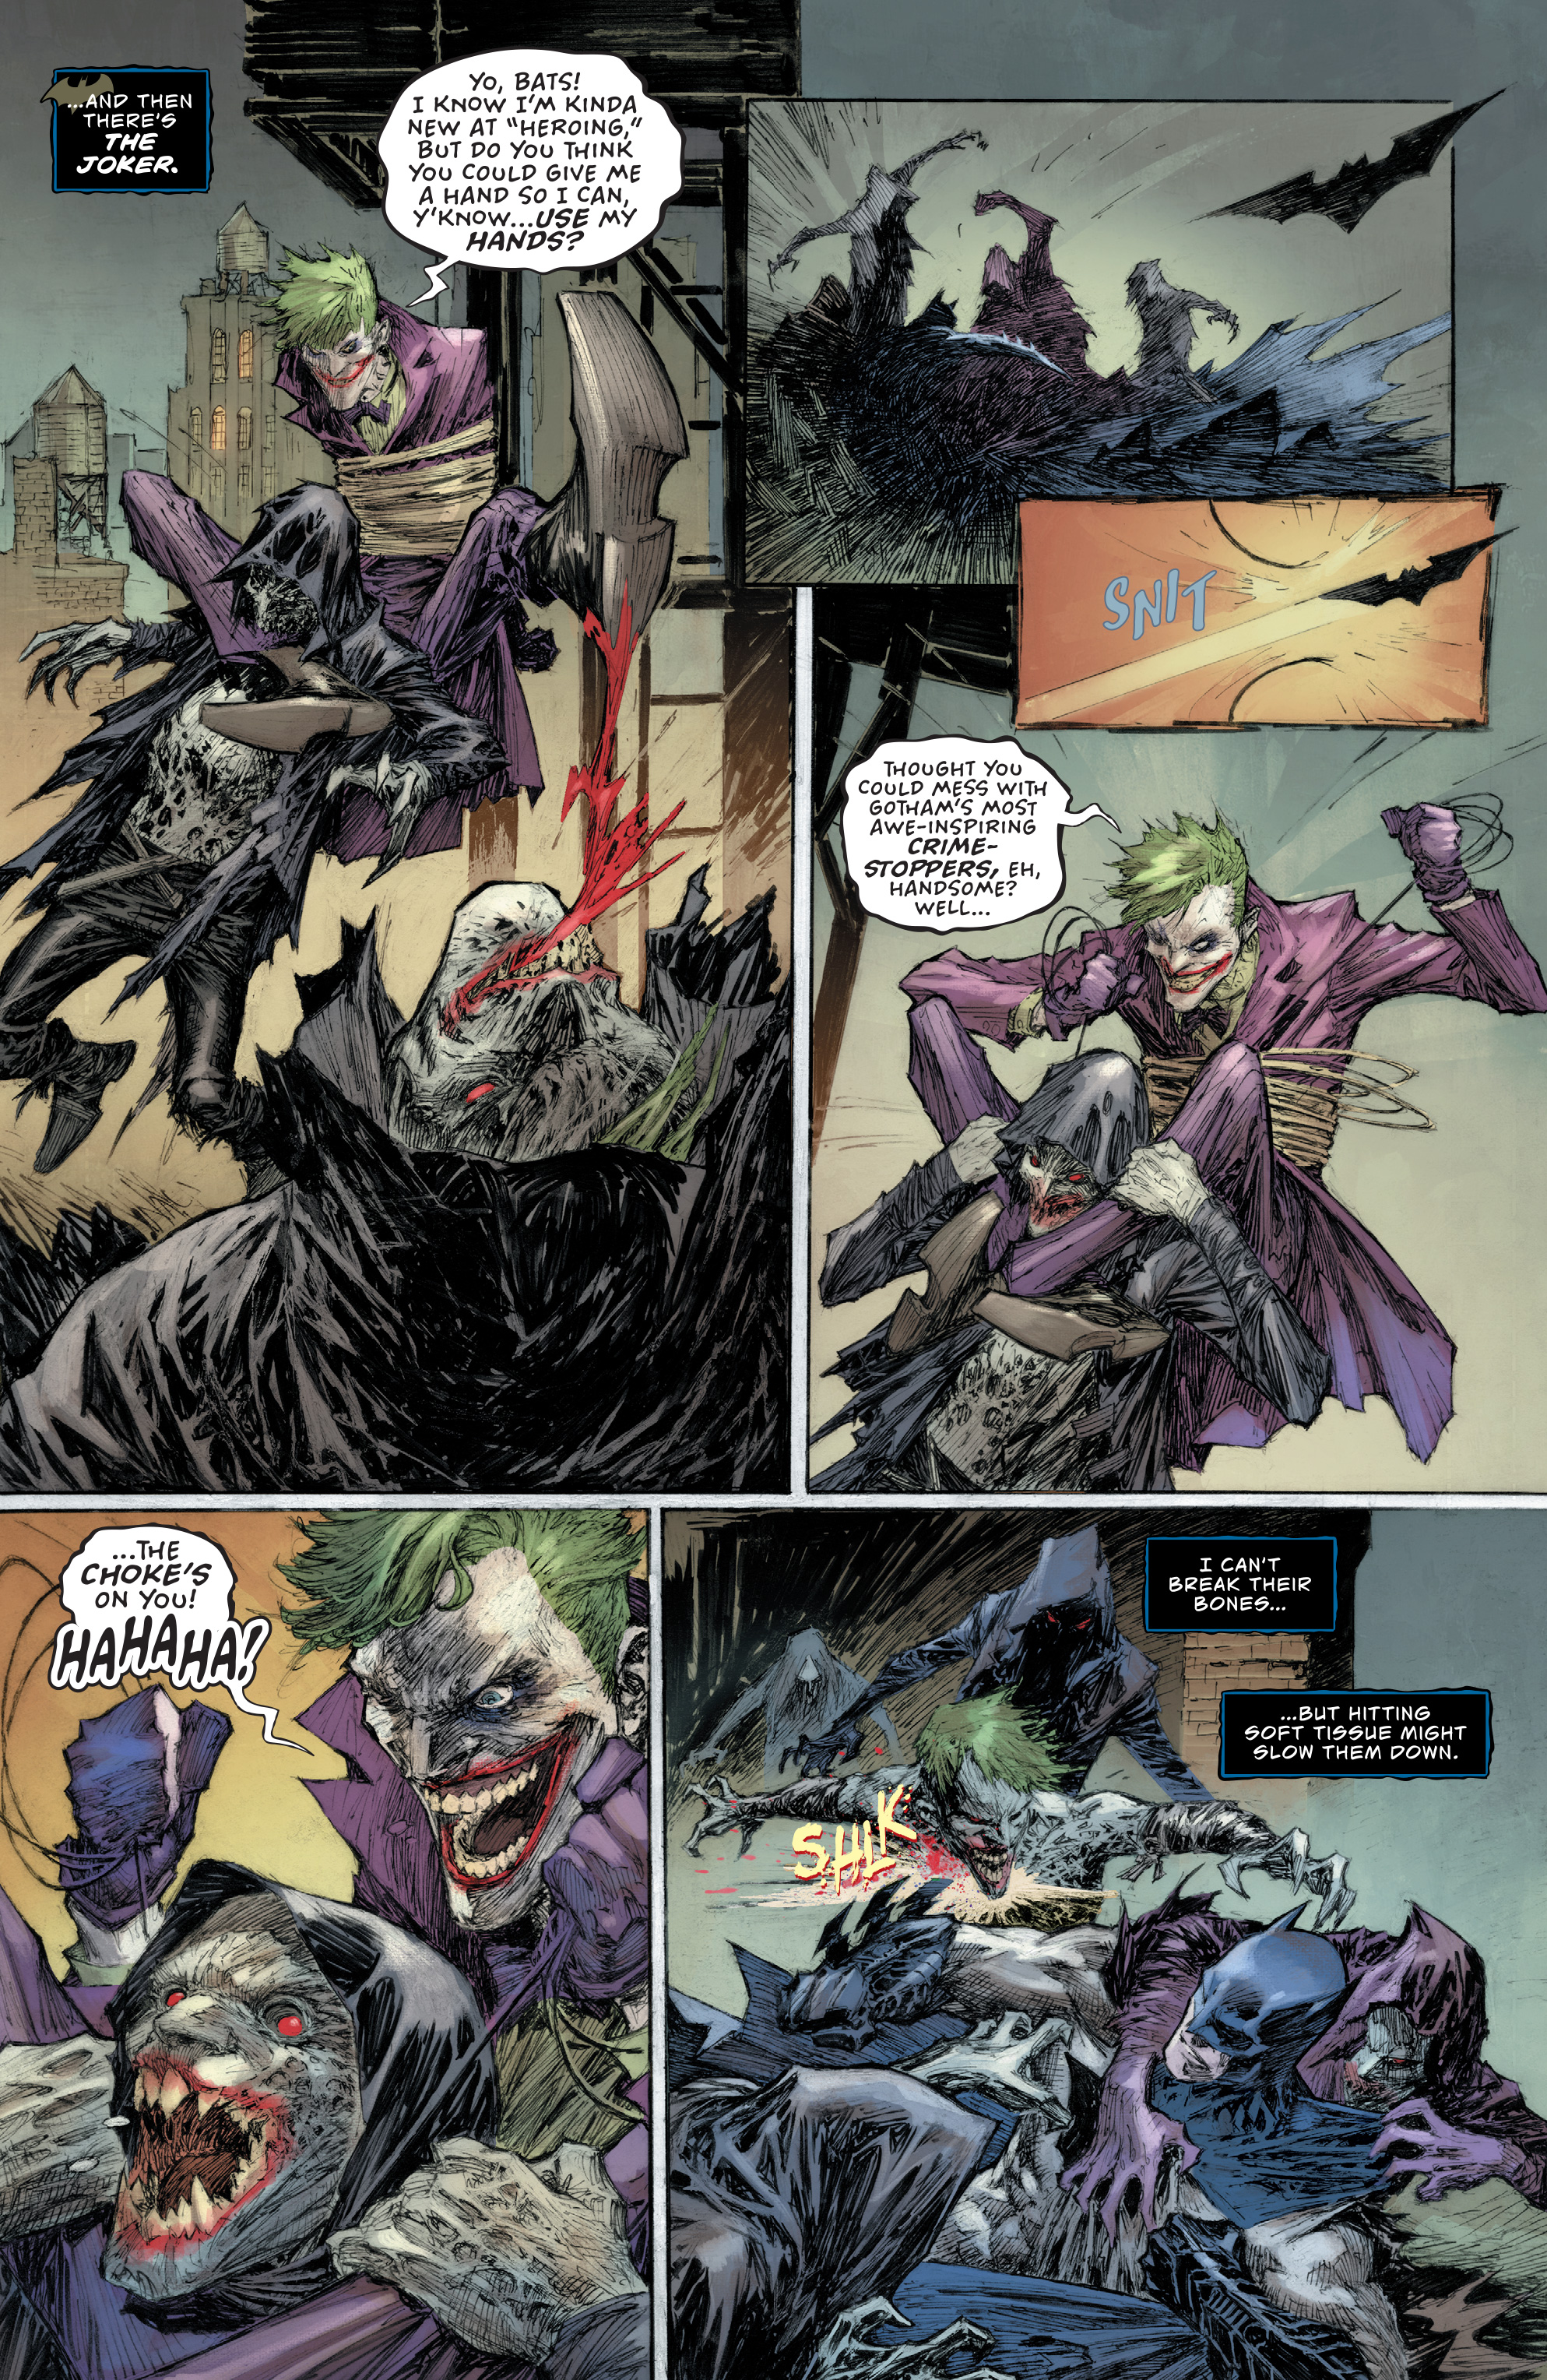 Weird Science DC Comics: Batman & The Joker: The Deadly Duo #2 Review